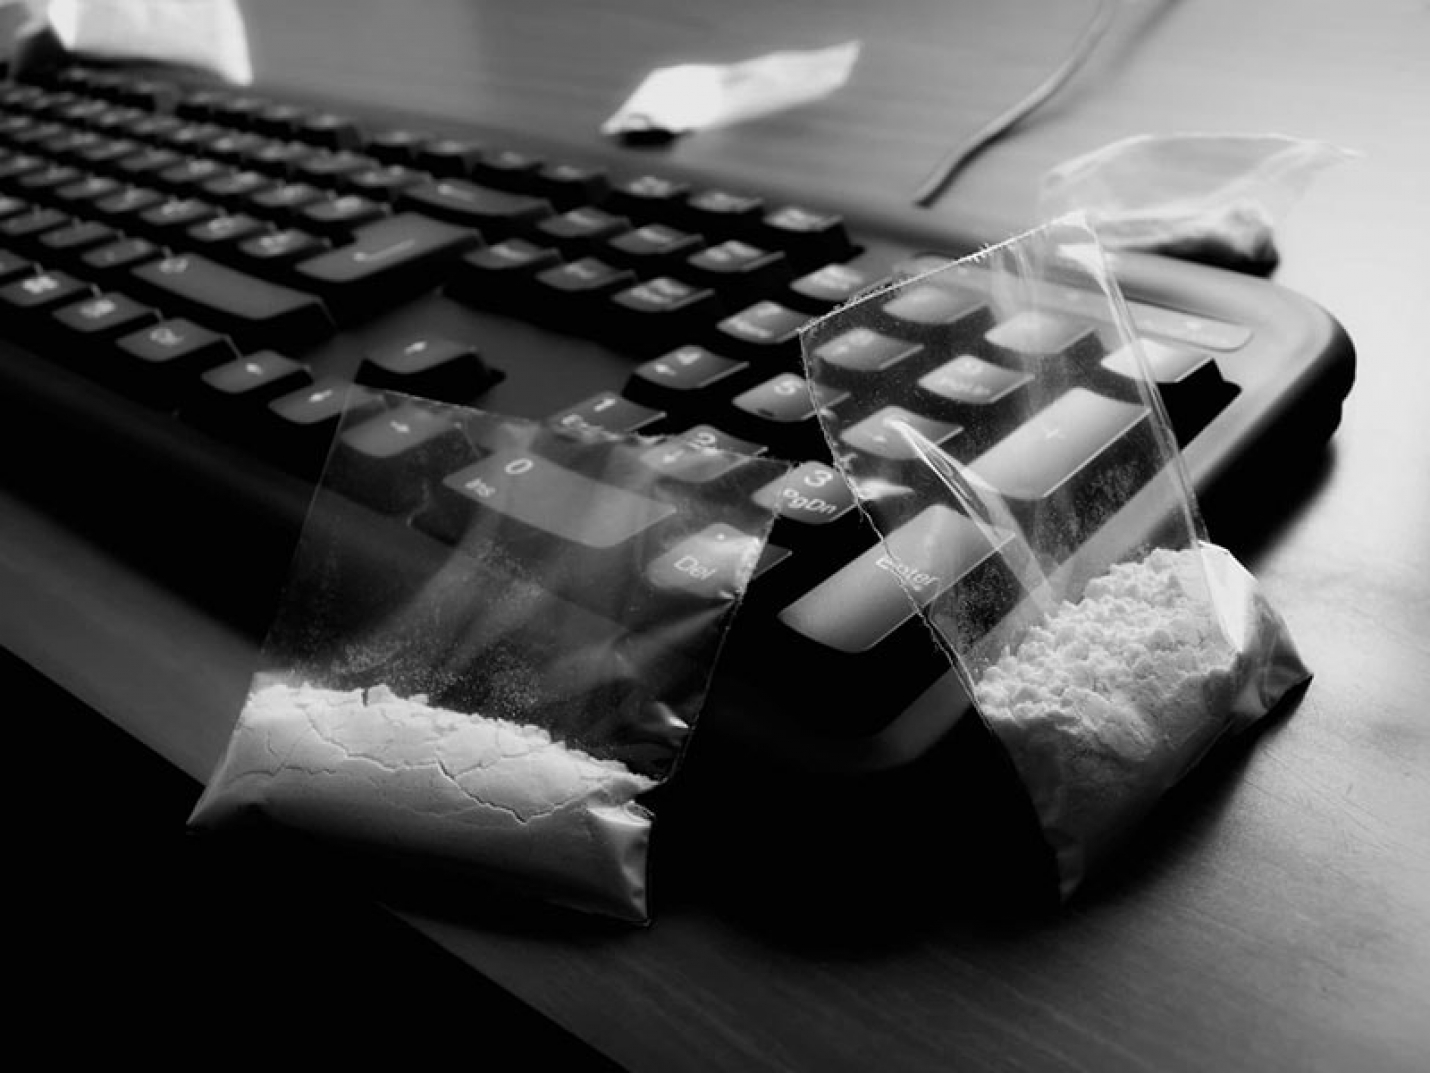 Продажа наркотиков через интернет видео скачать бесплатно о вреде наркотиков